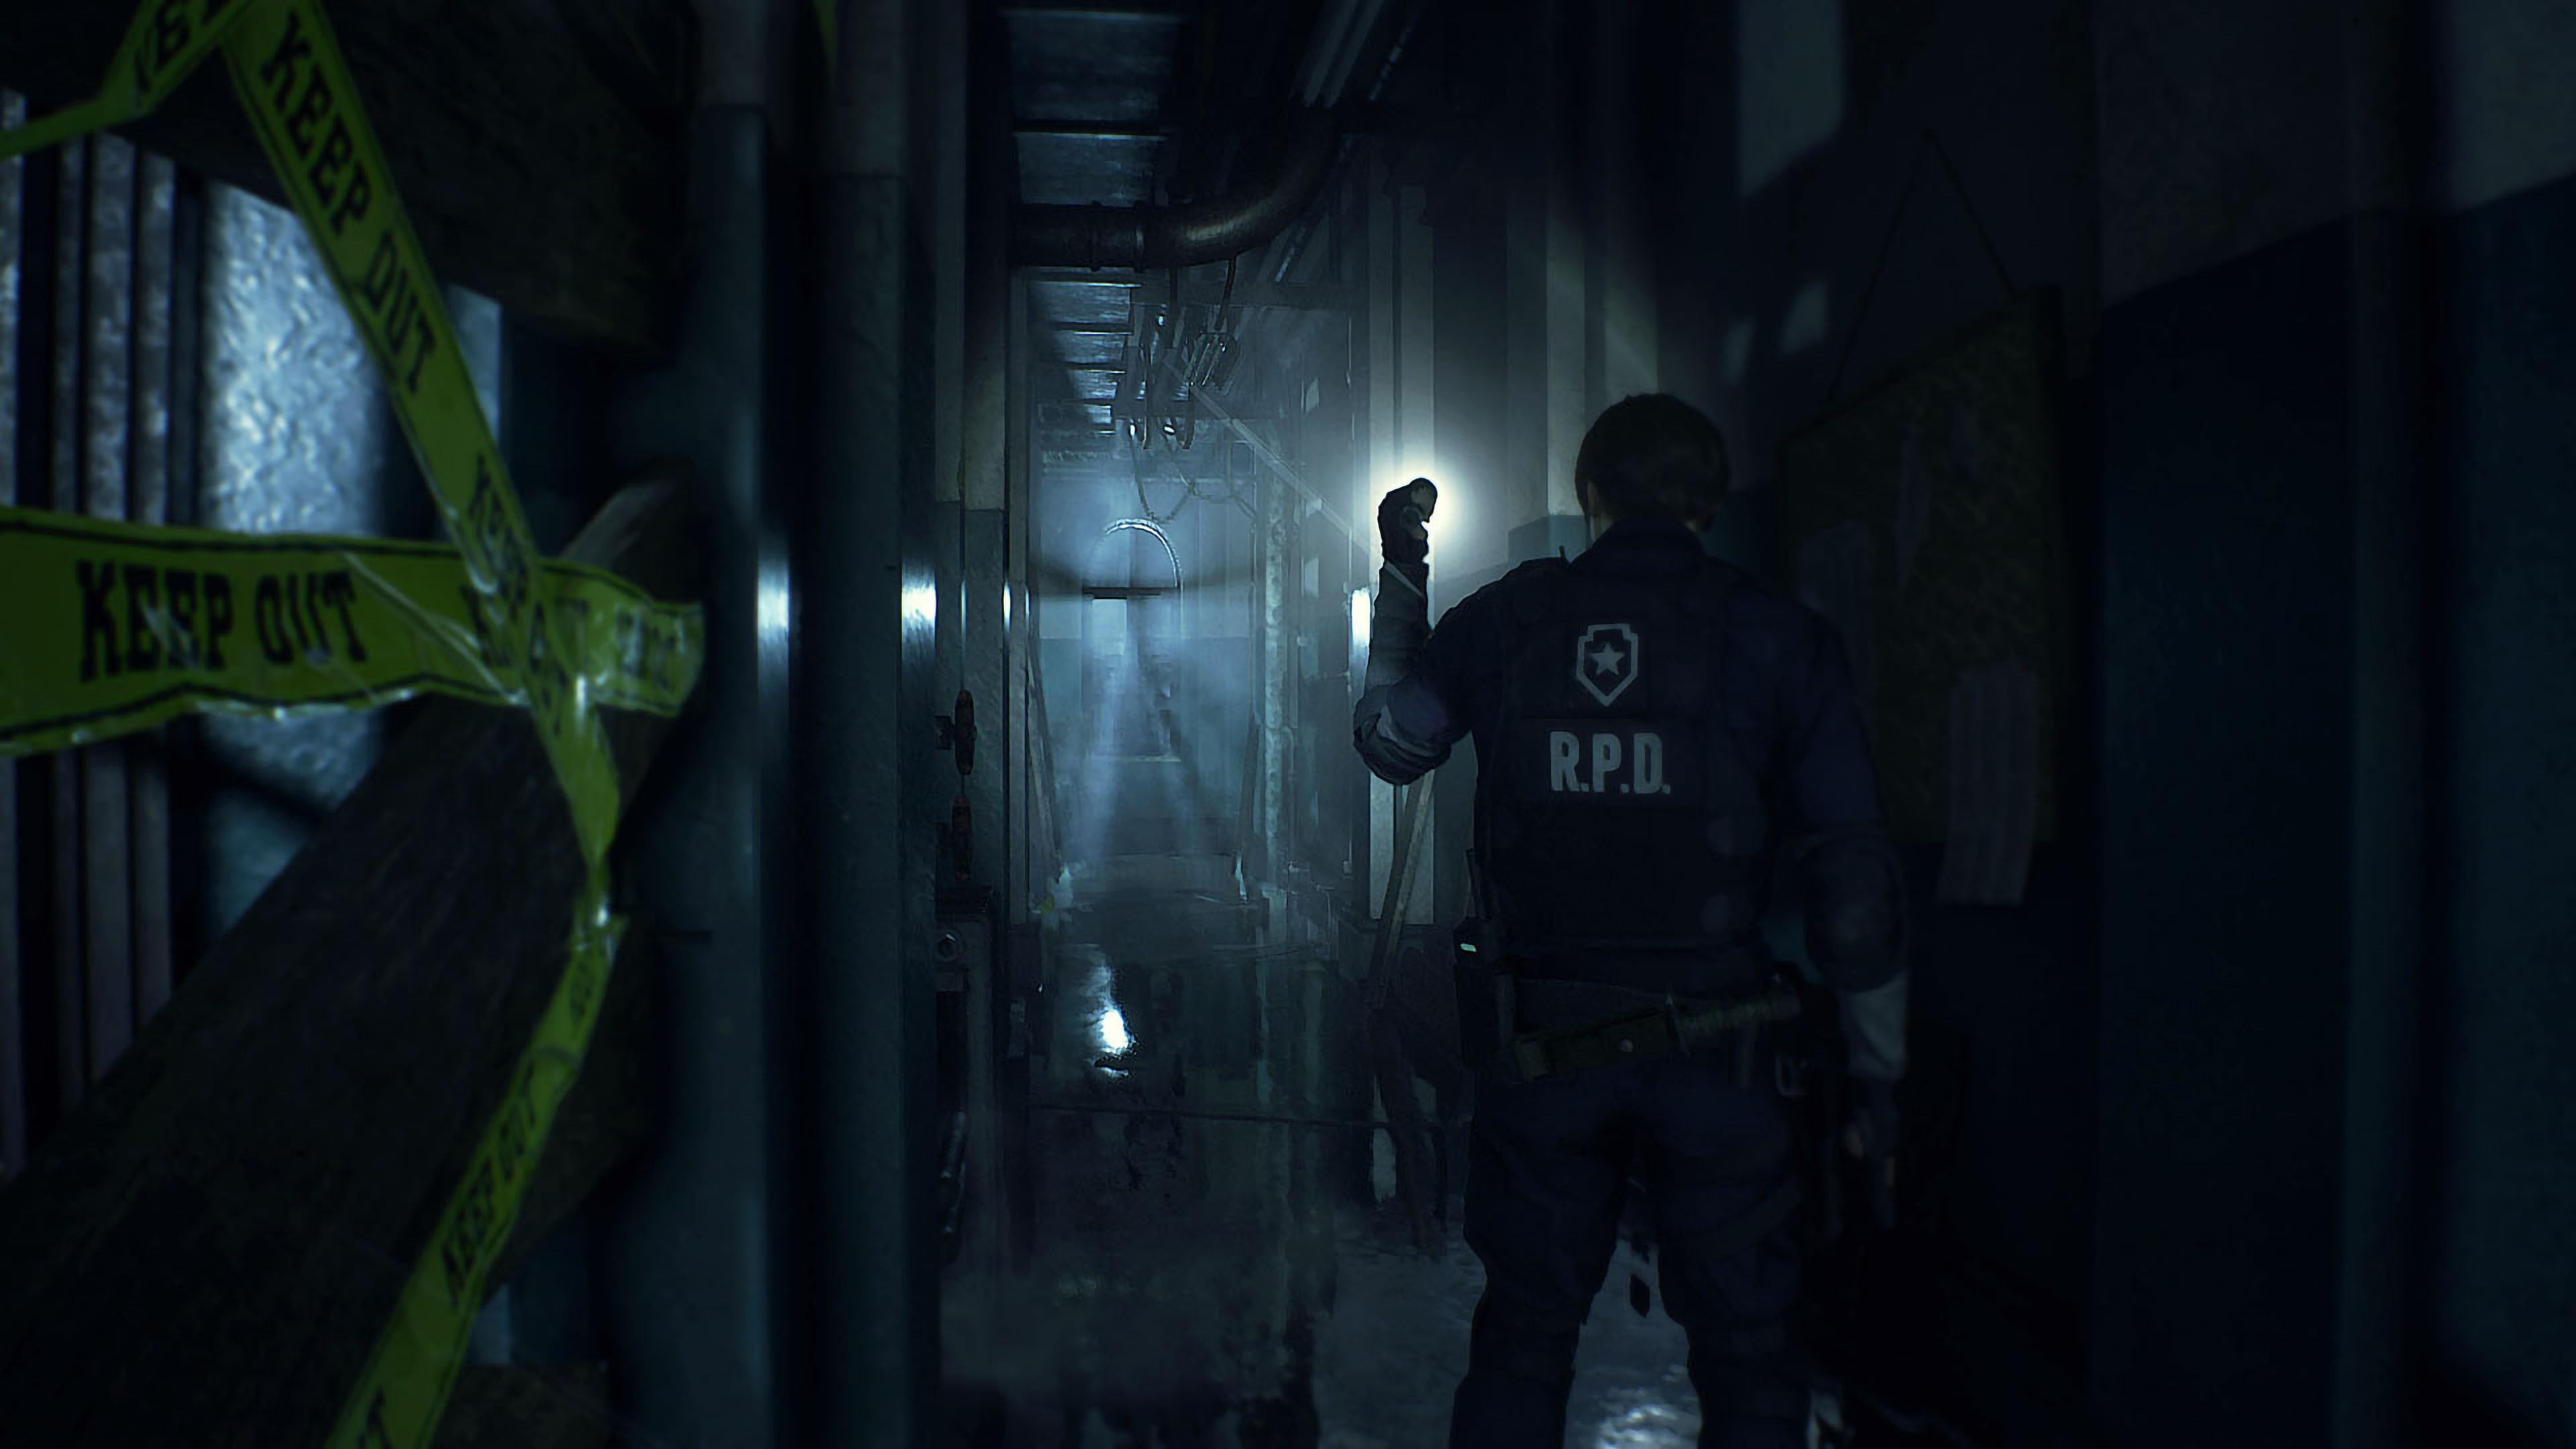 Jogo Resident Evil 2 PS4 Capcom com o Melhor Preço é no Zoom